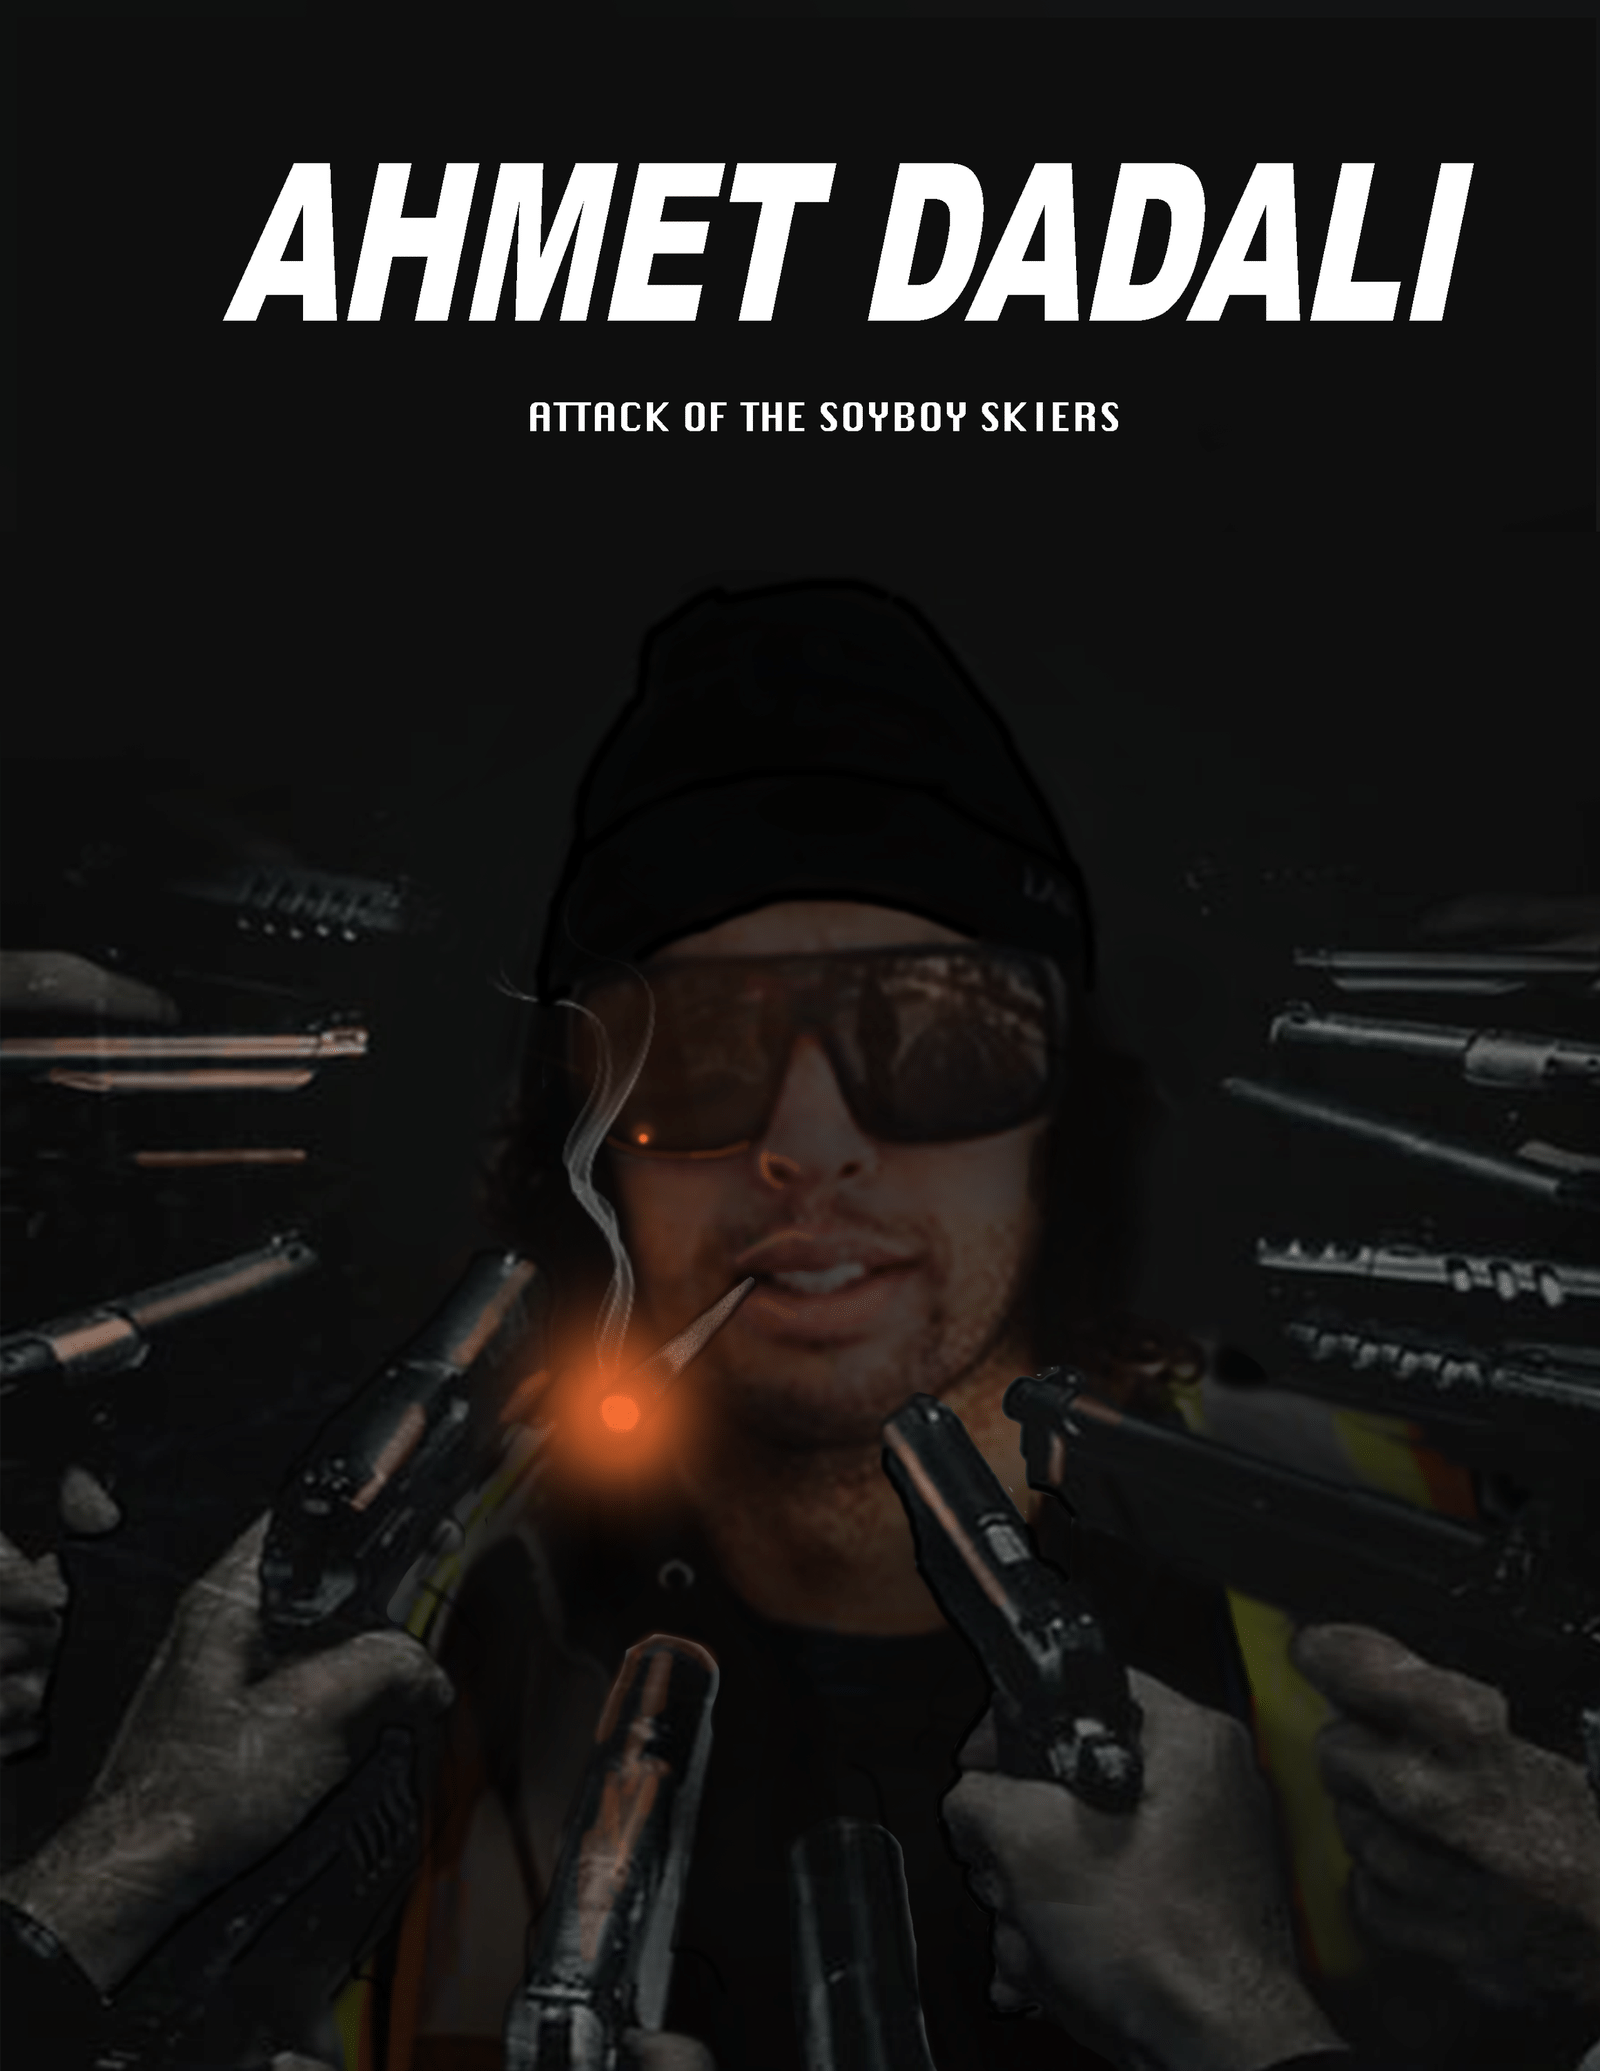 Ahmet Dadali: Attack of the SOYBOY Skiers